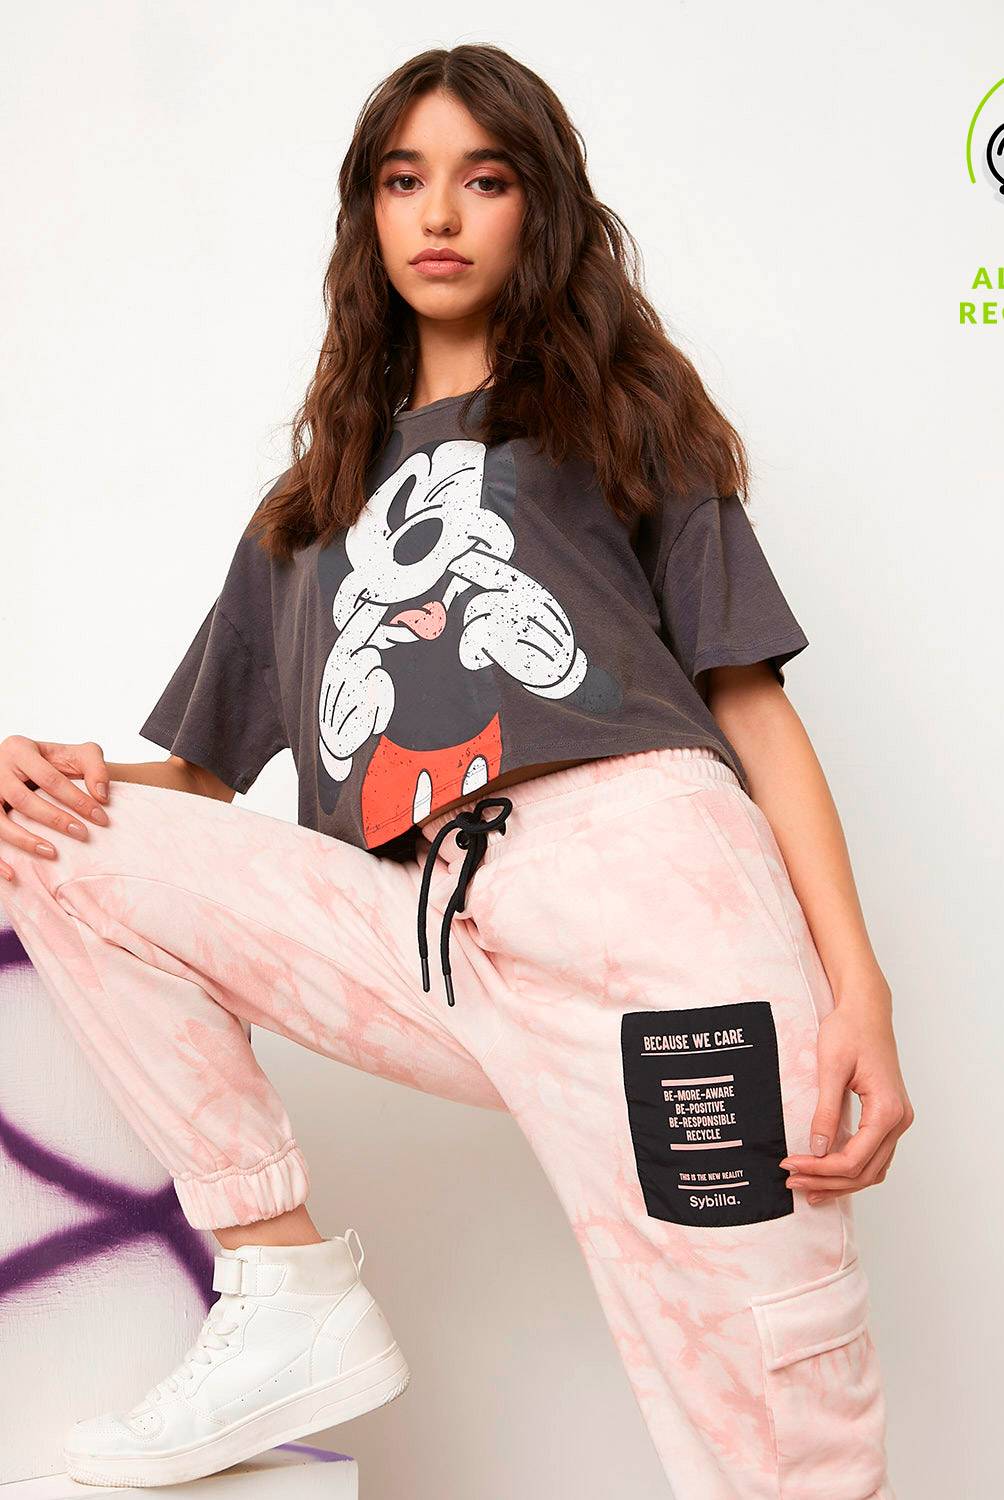 DISNEY - Camiseta Manga corta Algodón orgánico Disney Mujer